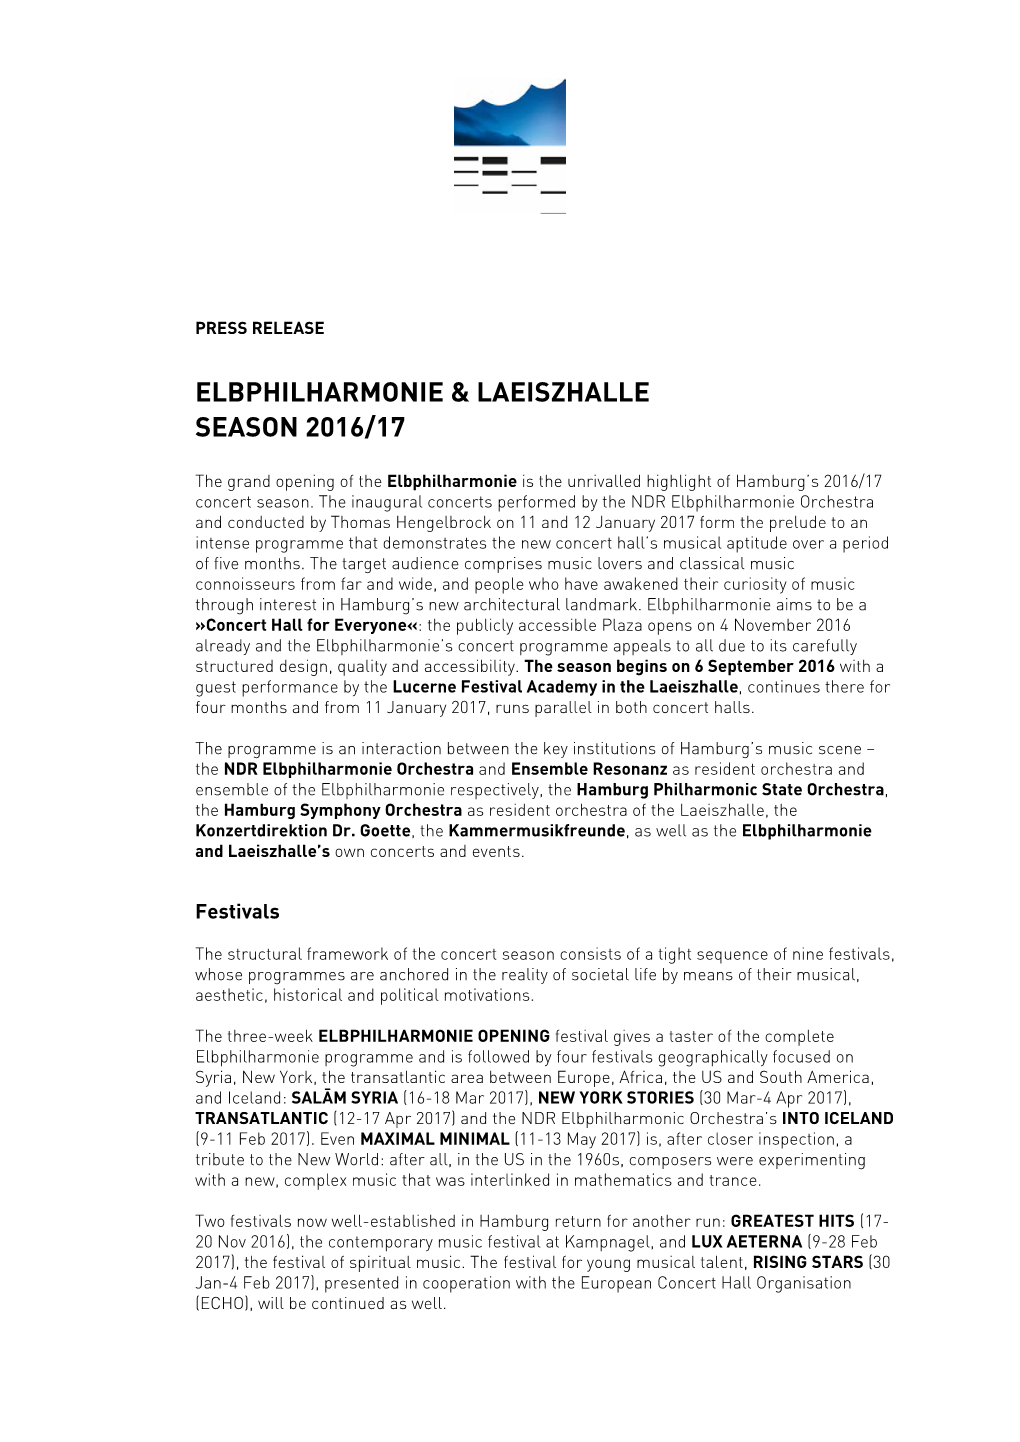 Elbphilharmonie & Laeiszhalle Season 2016/17